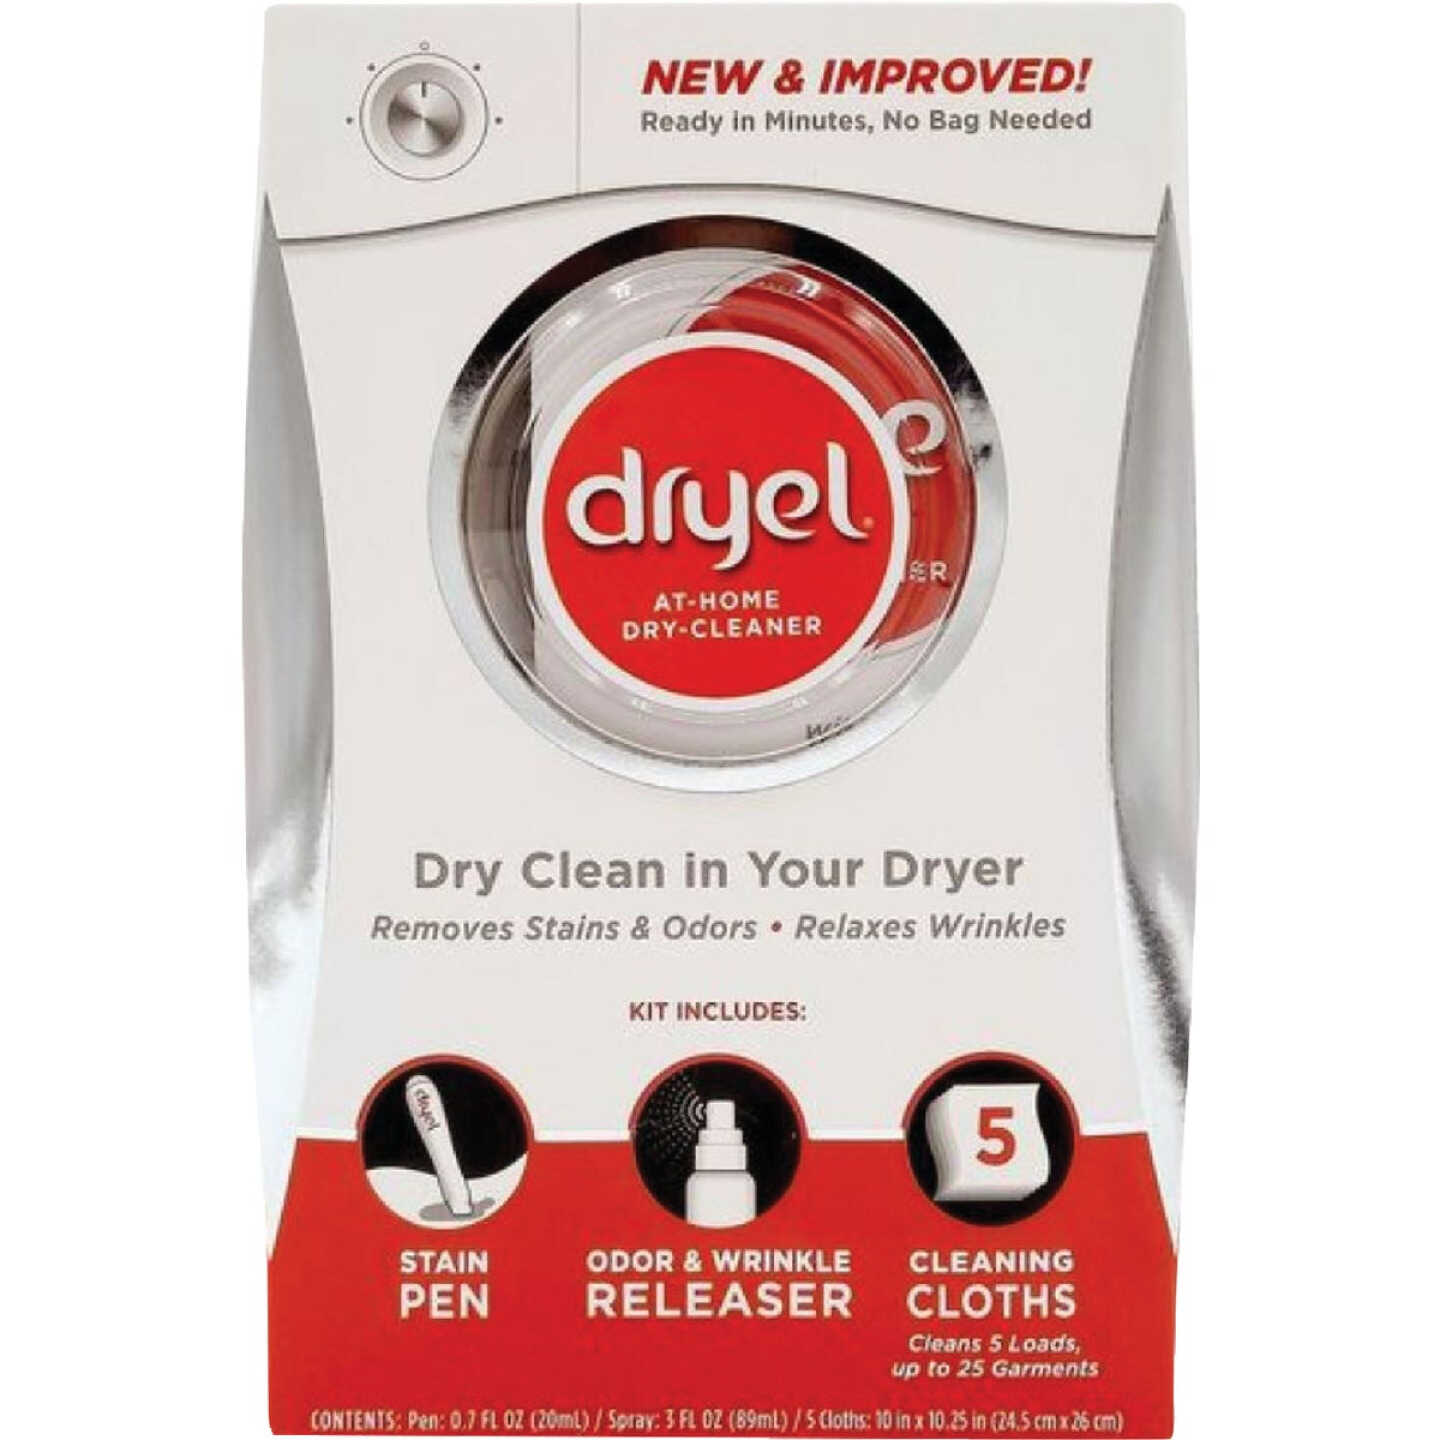 Dryel At-Home Dry Cleaner Starter Kit (Regular Pack)